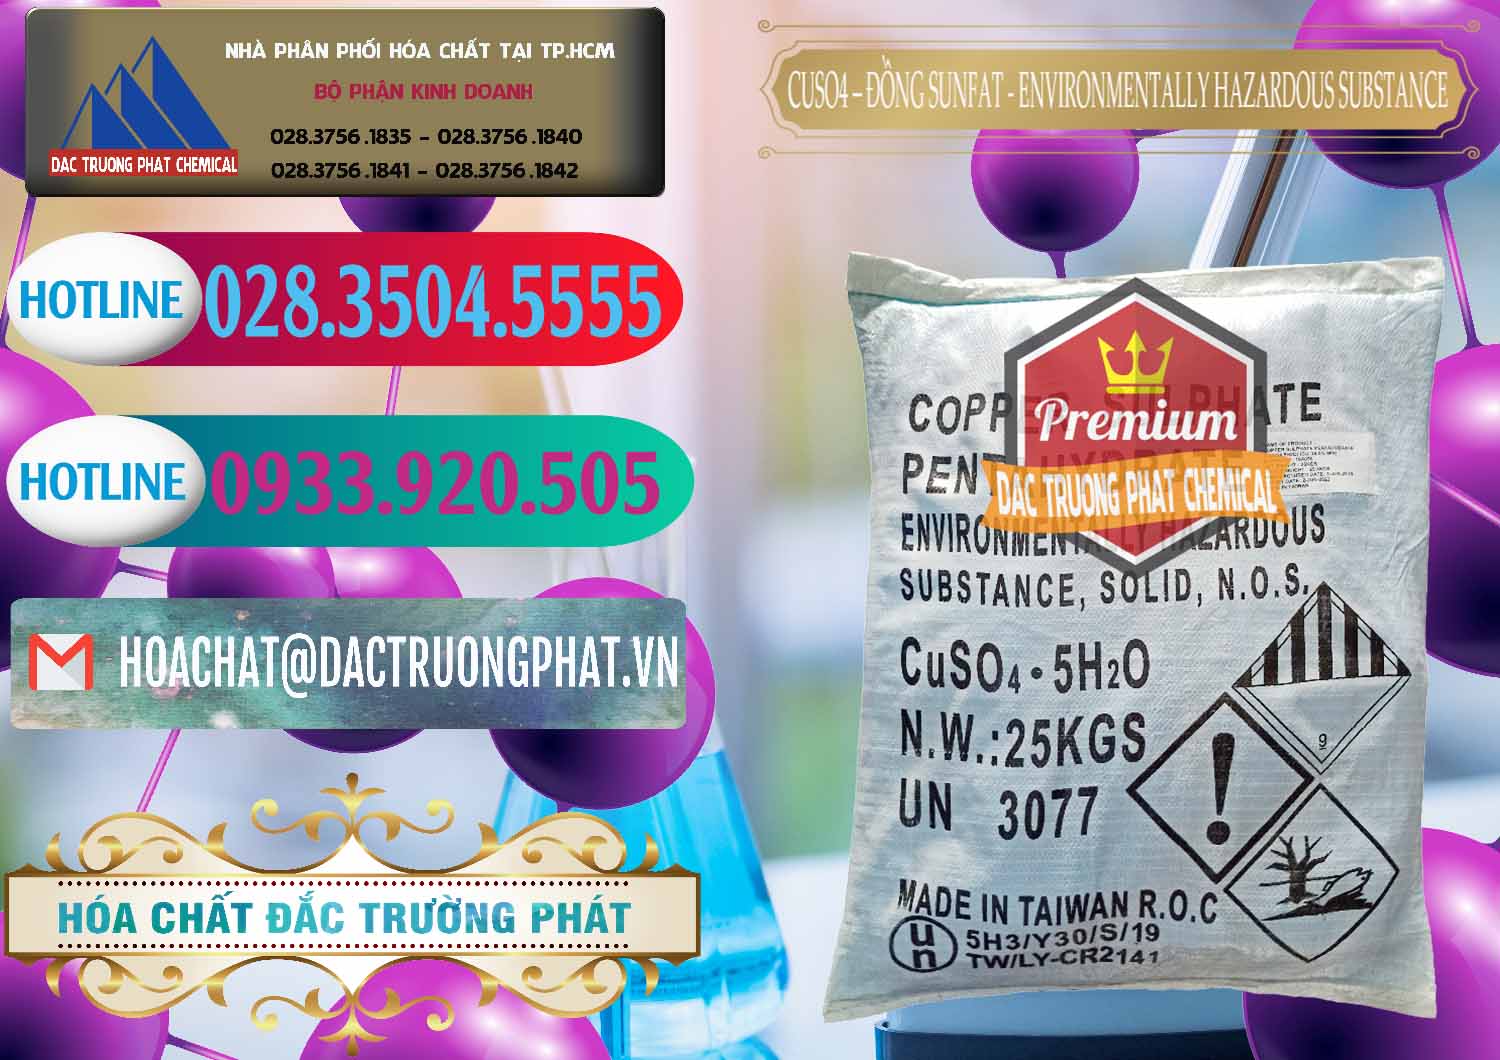 Công ty chuyên cung cấp _ bán CuSO4 – Đồng Sunfat Đài Loan Taiwan - 0059 - Cty cung cấp và phân phối hóa chất tại TP.HCM - truongphat.vn